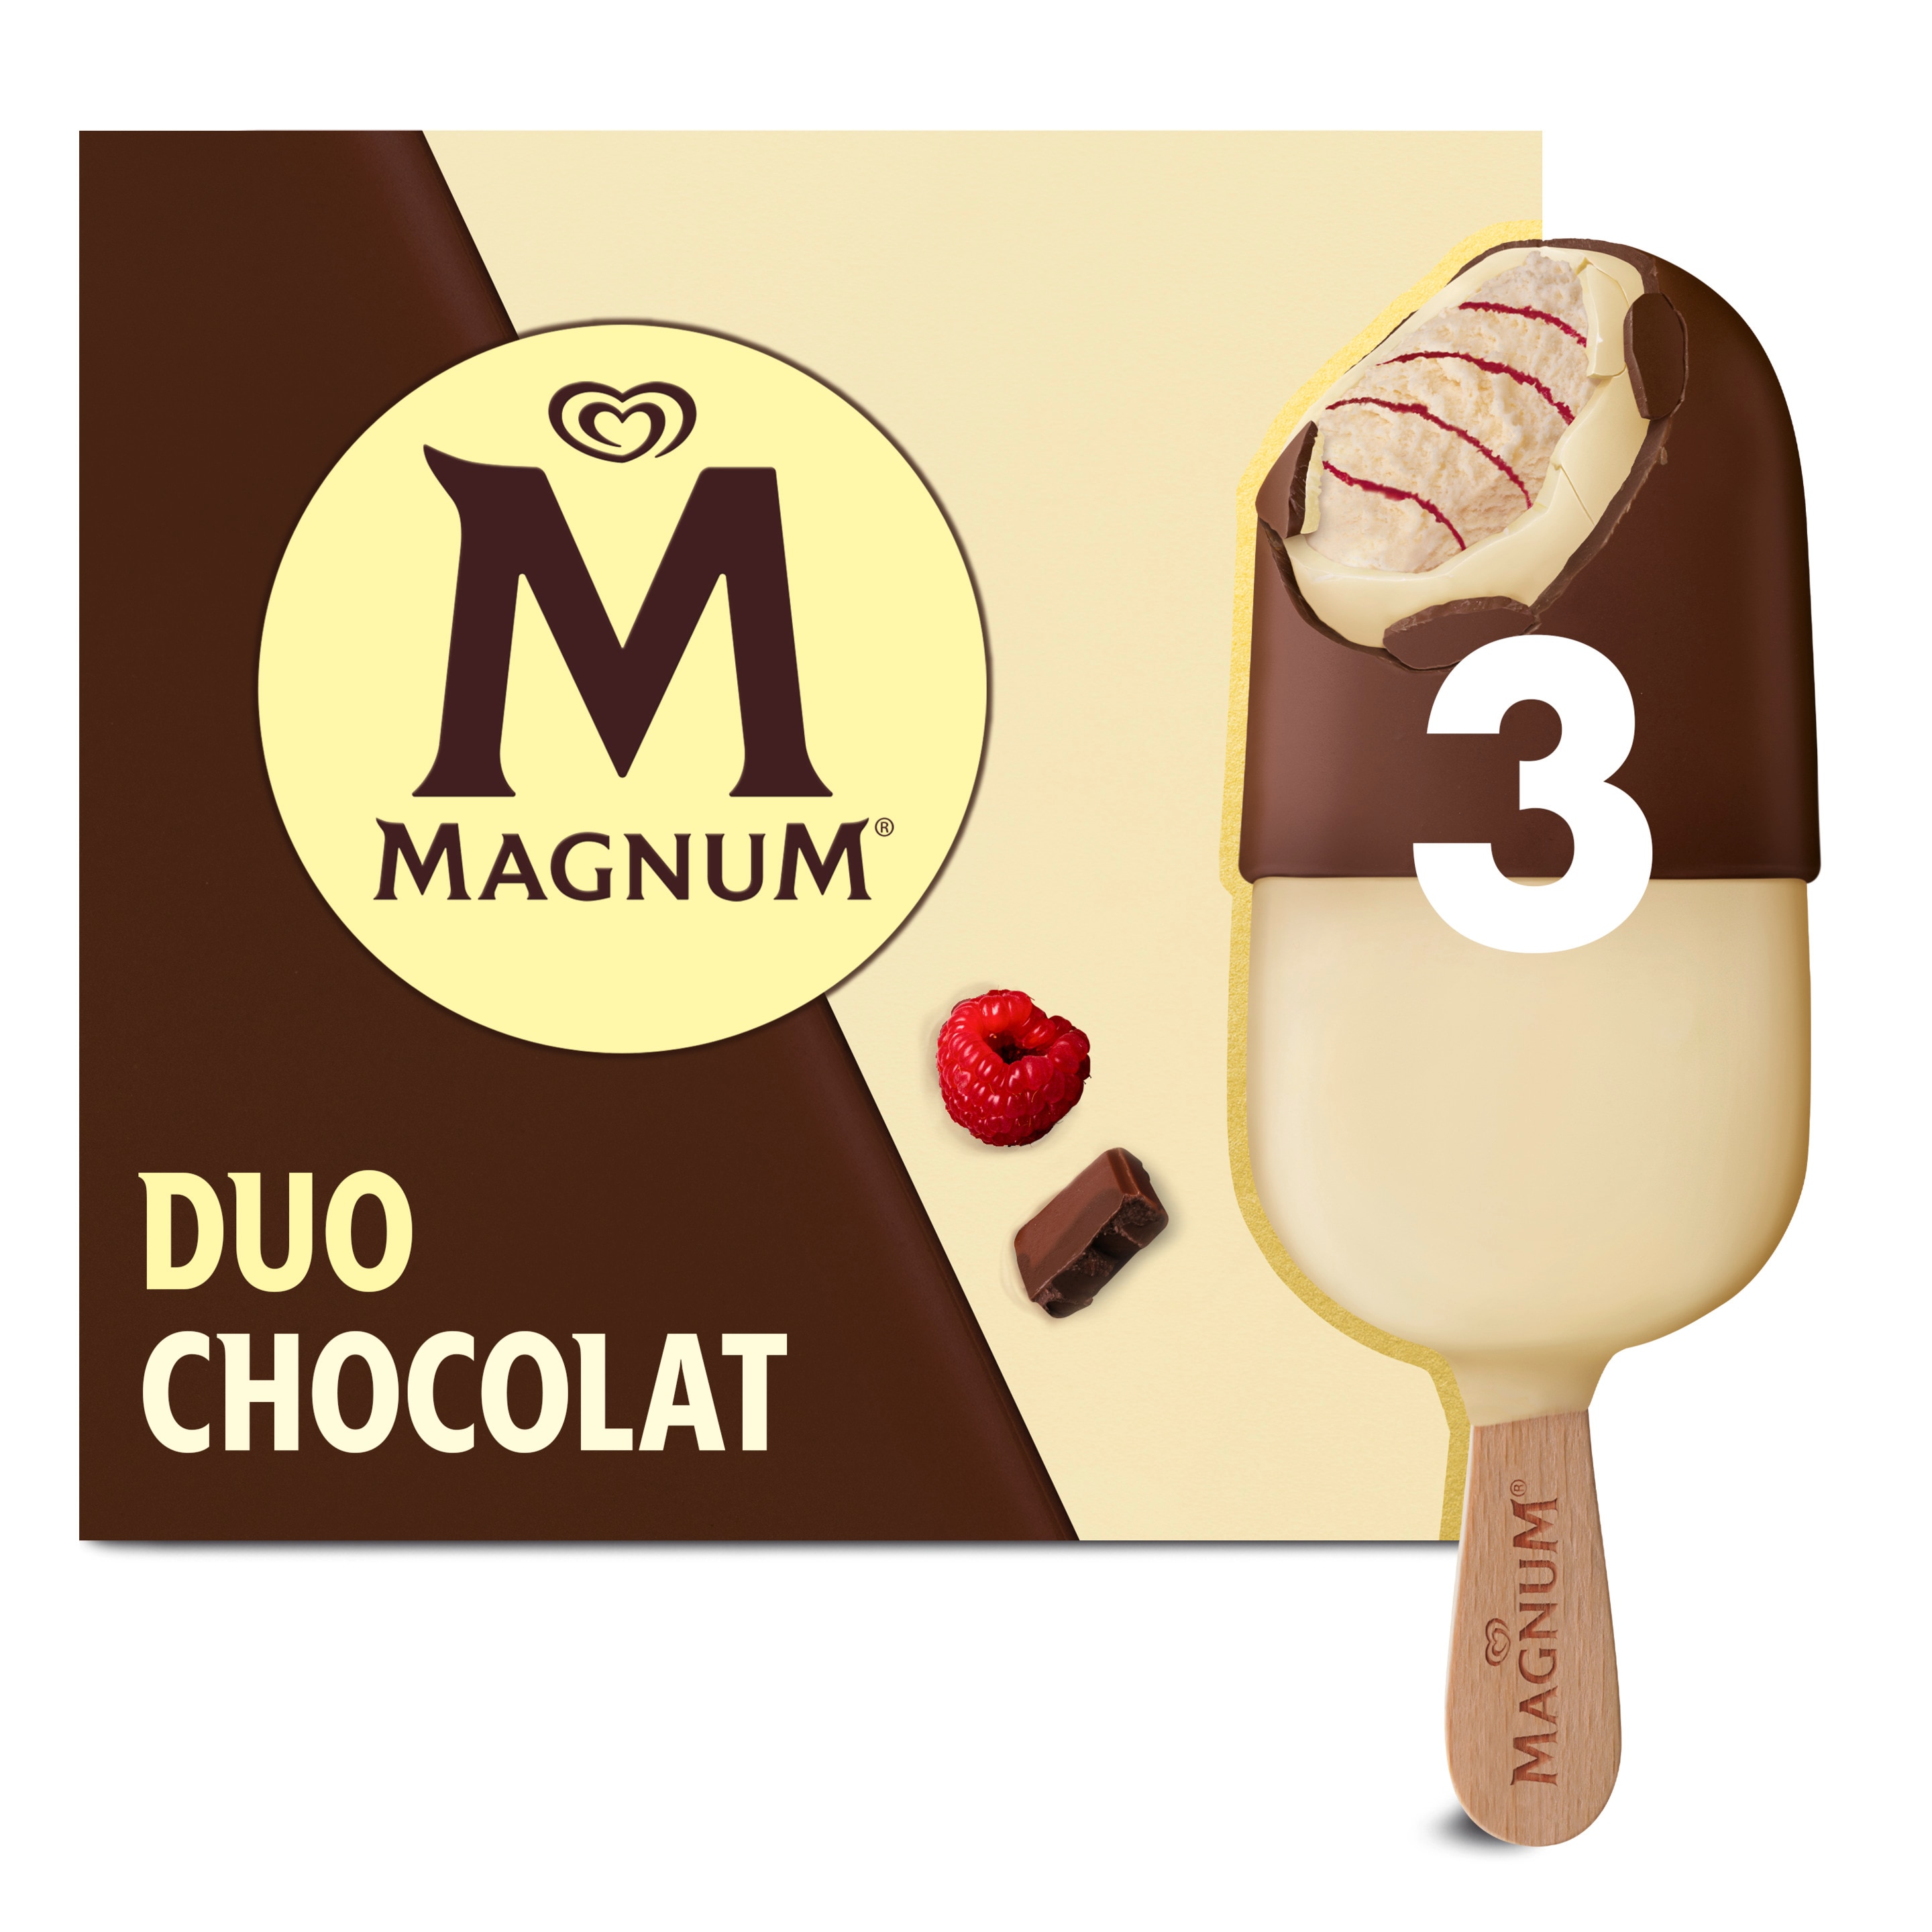 MG Chocolate Duet